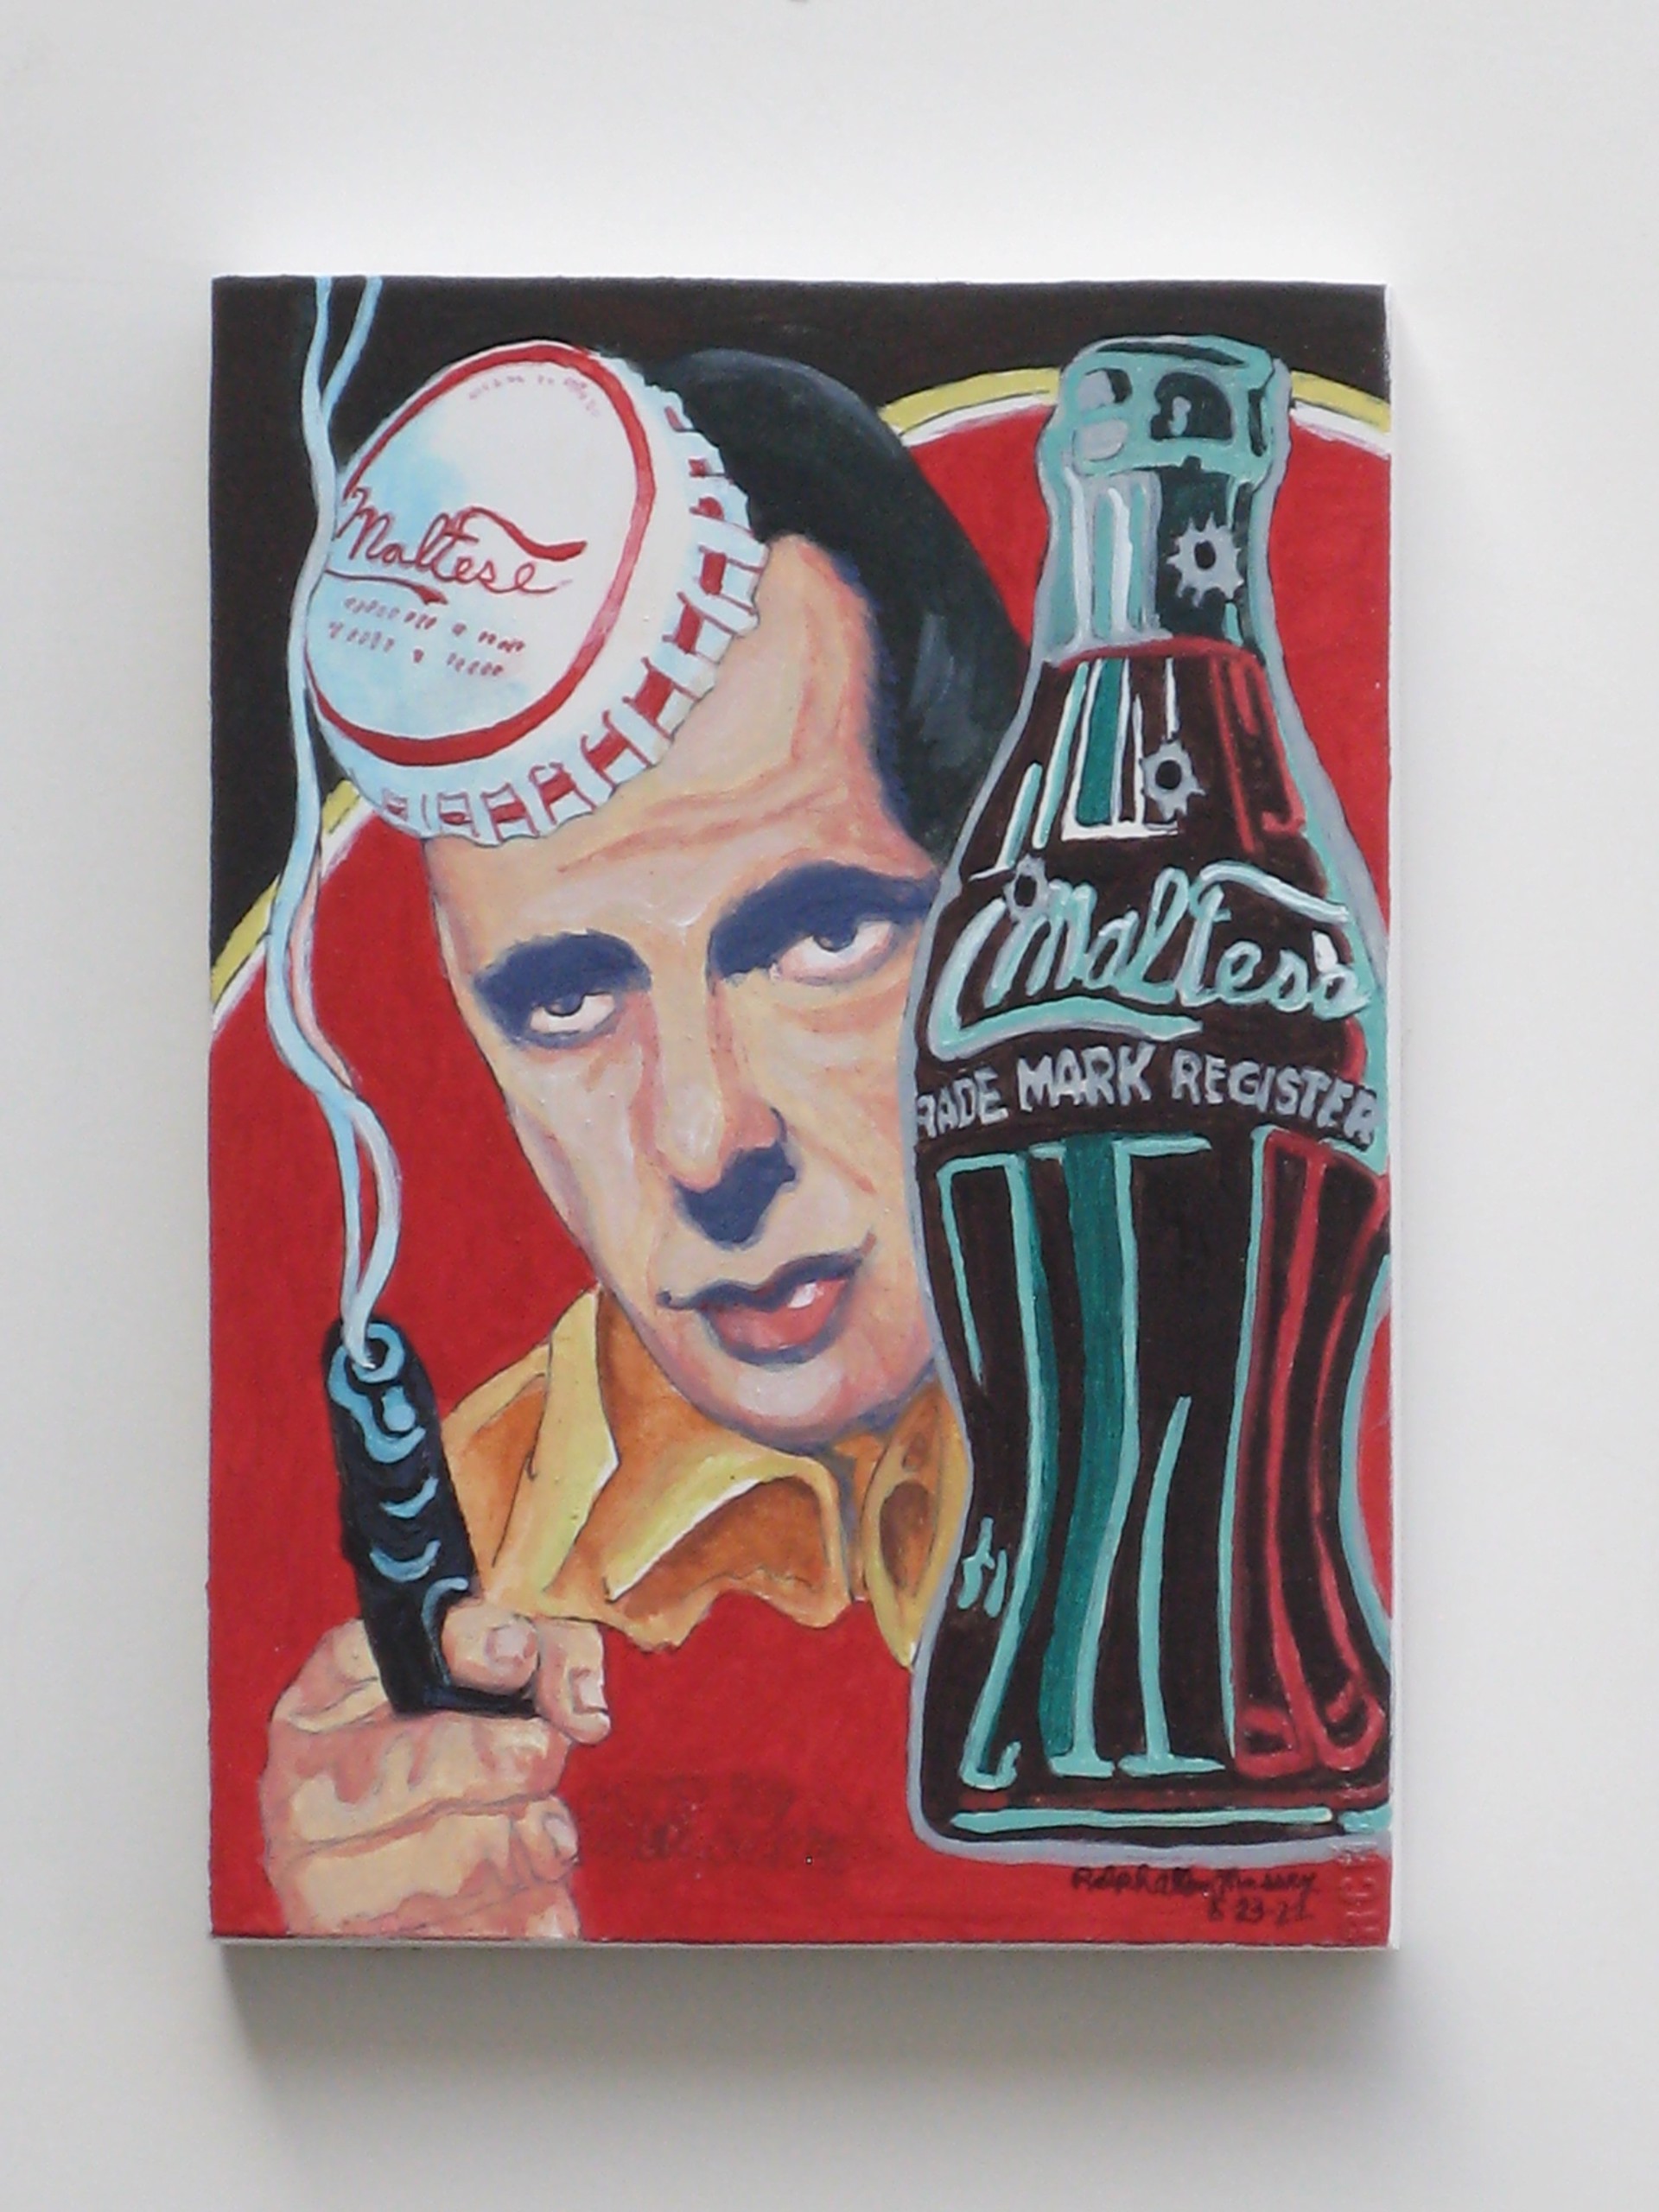 Maltese Cola offset #1 by Ralph Allen Massey